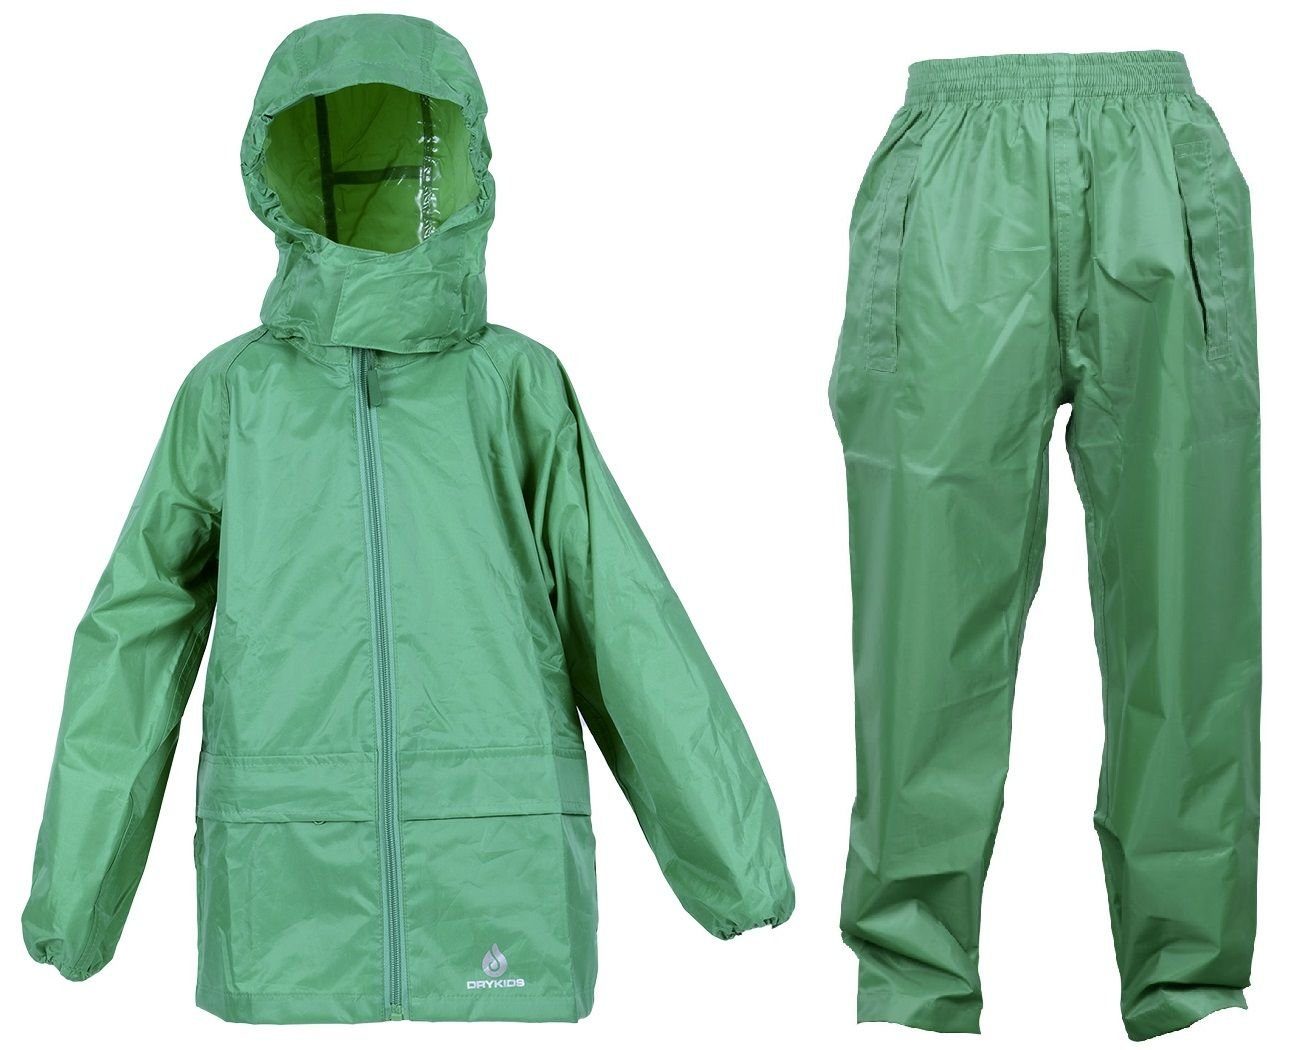 DRY Regenanzug-Set, Regenbekleidung Regenanzug KIDS reflektierende Wasserdichtes (1-tlg), Kinder Grün